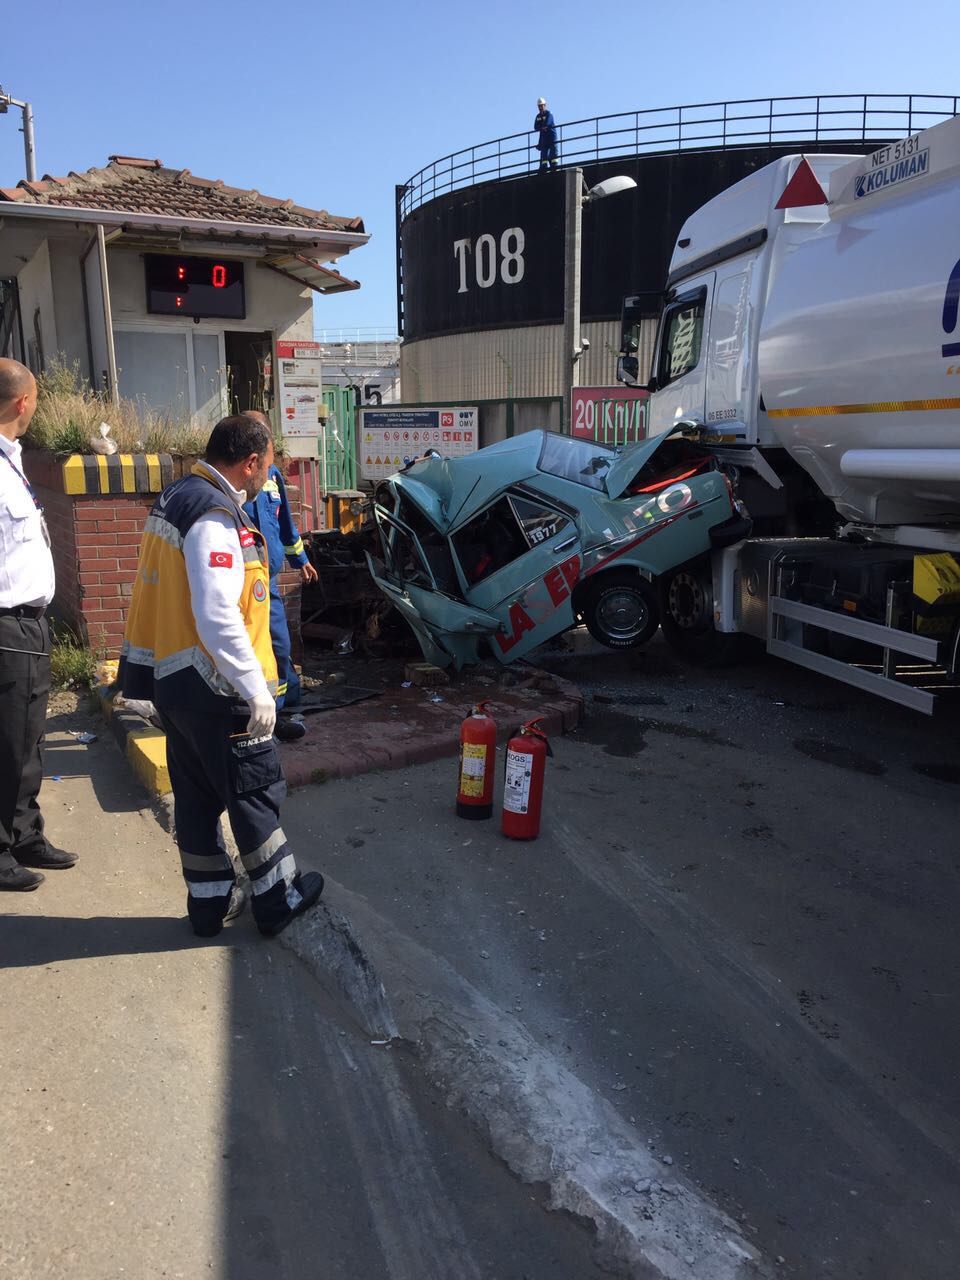 Trabzon'da kaza: 1 Ölü 1 yaralı